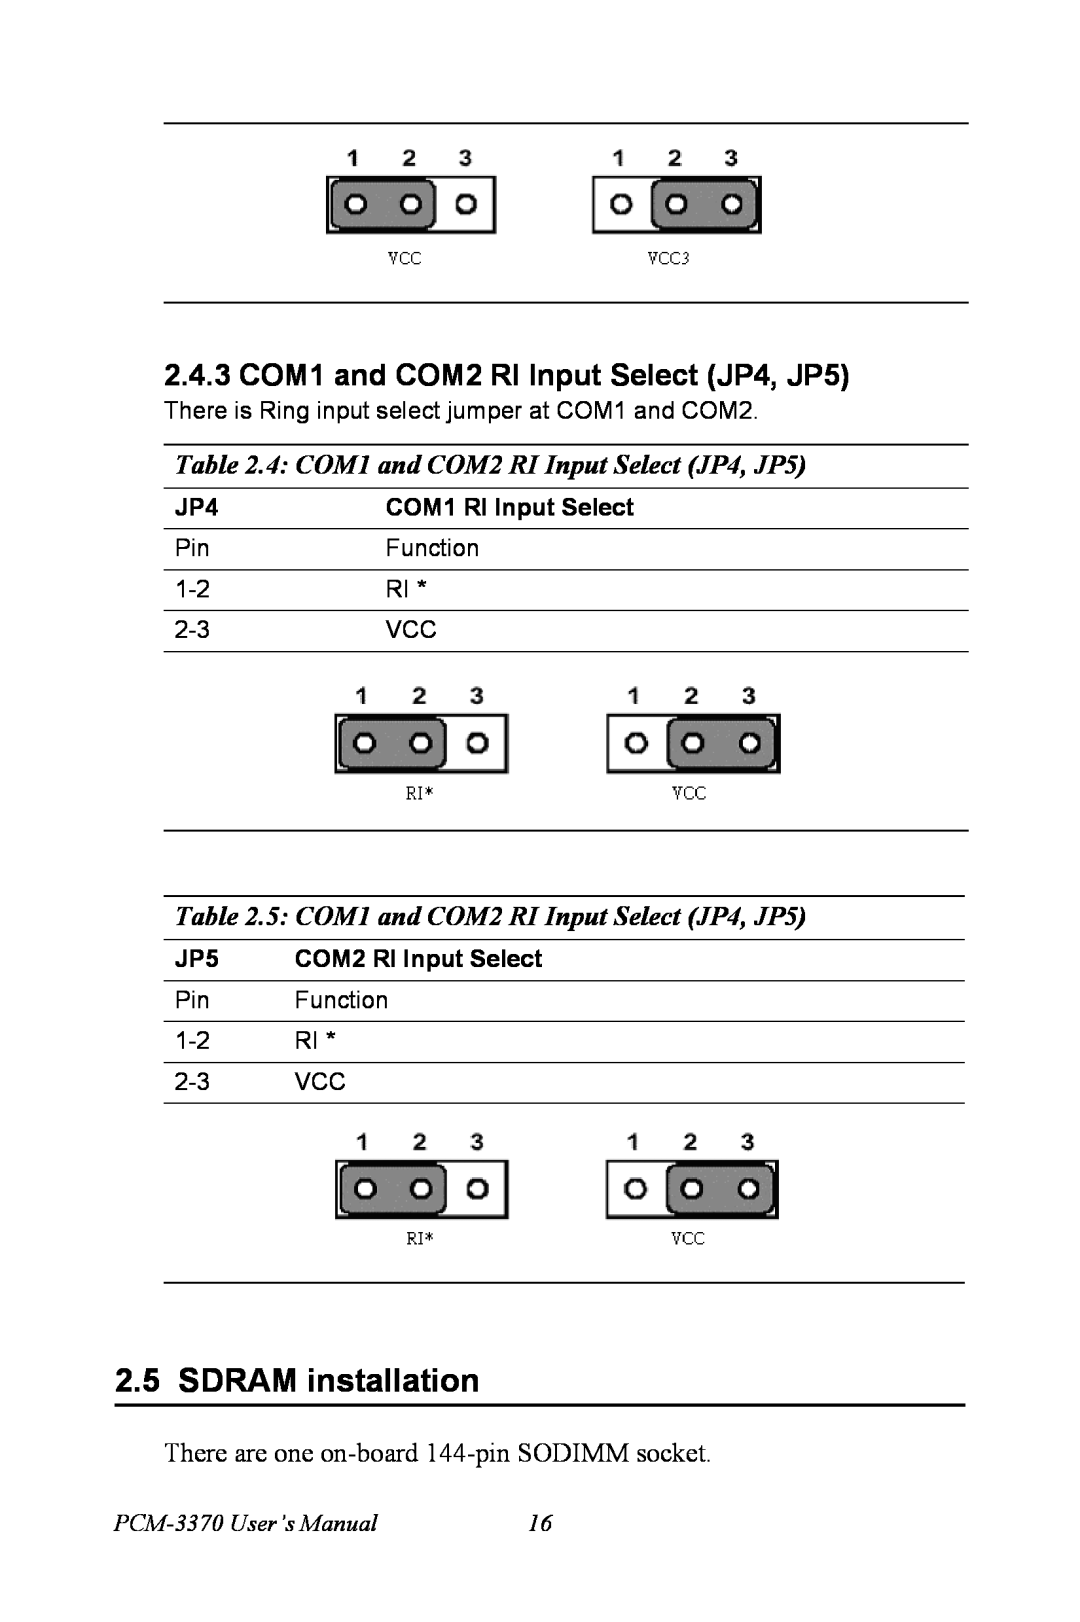 Intel PCM-3370 SDRAM installation, 2.4.3 COM1 and COM2 RI Input Select JP4, JP5, 4 COM1 and COM2 RI Input Select JP4, JP5 